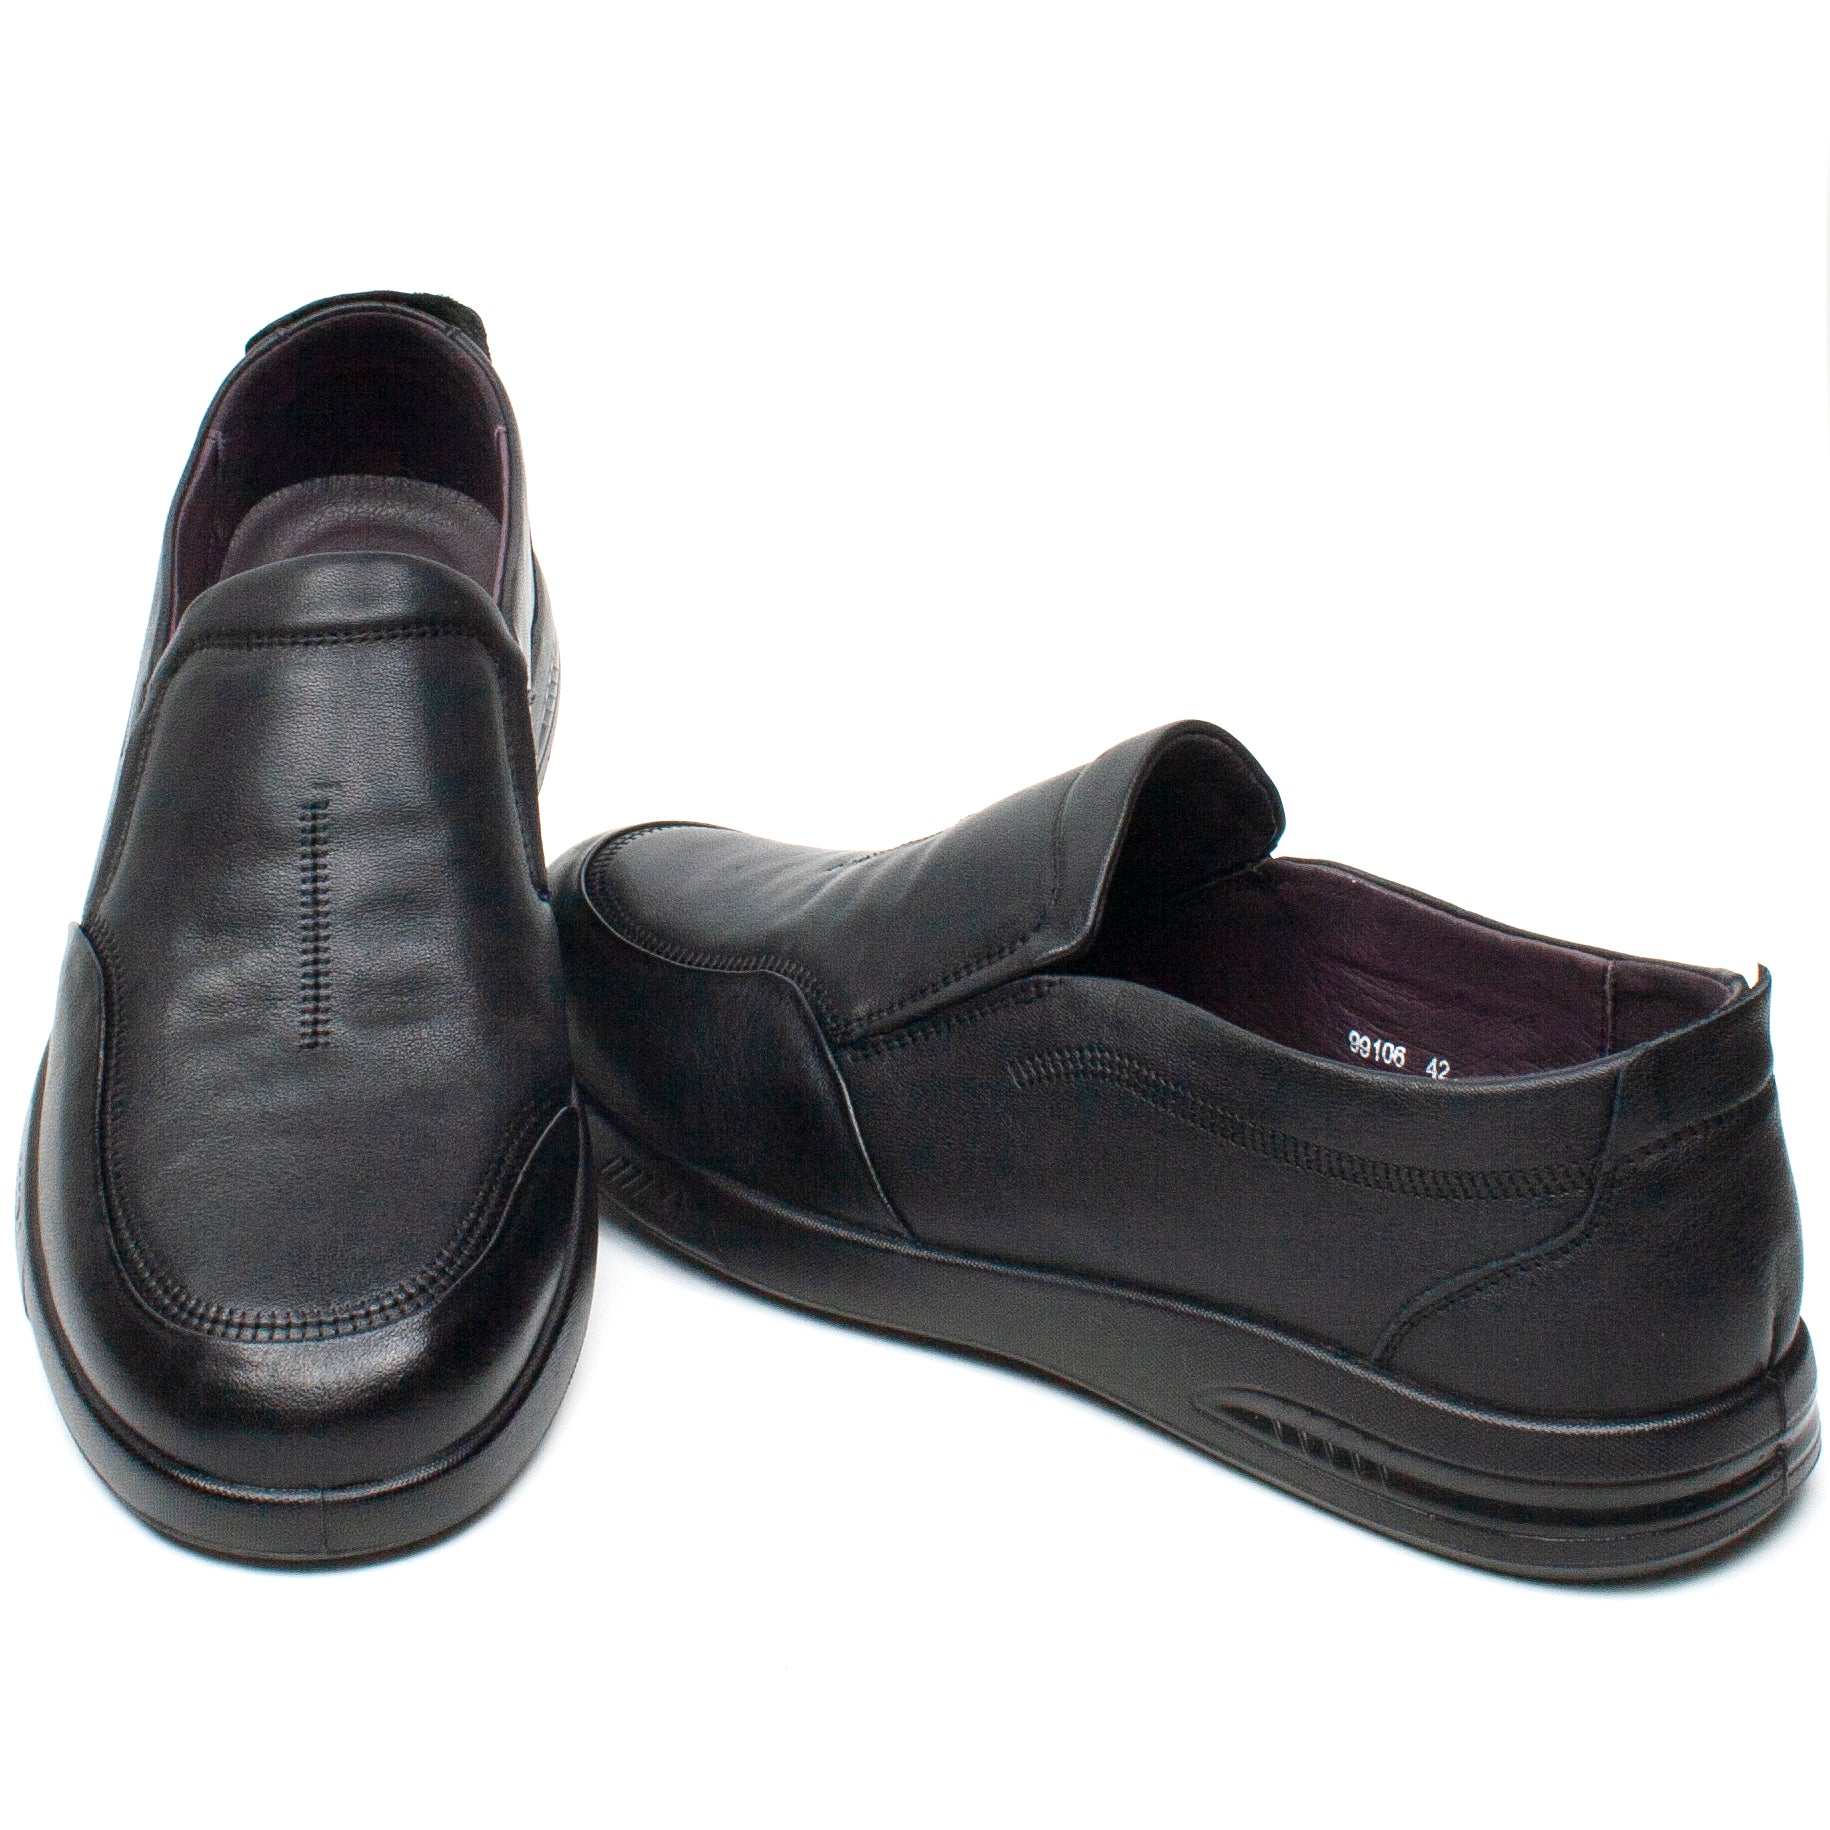 Mels Pantofi barbati 99106 negru IB0544-NG